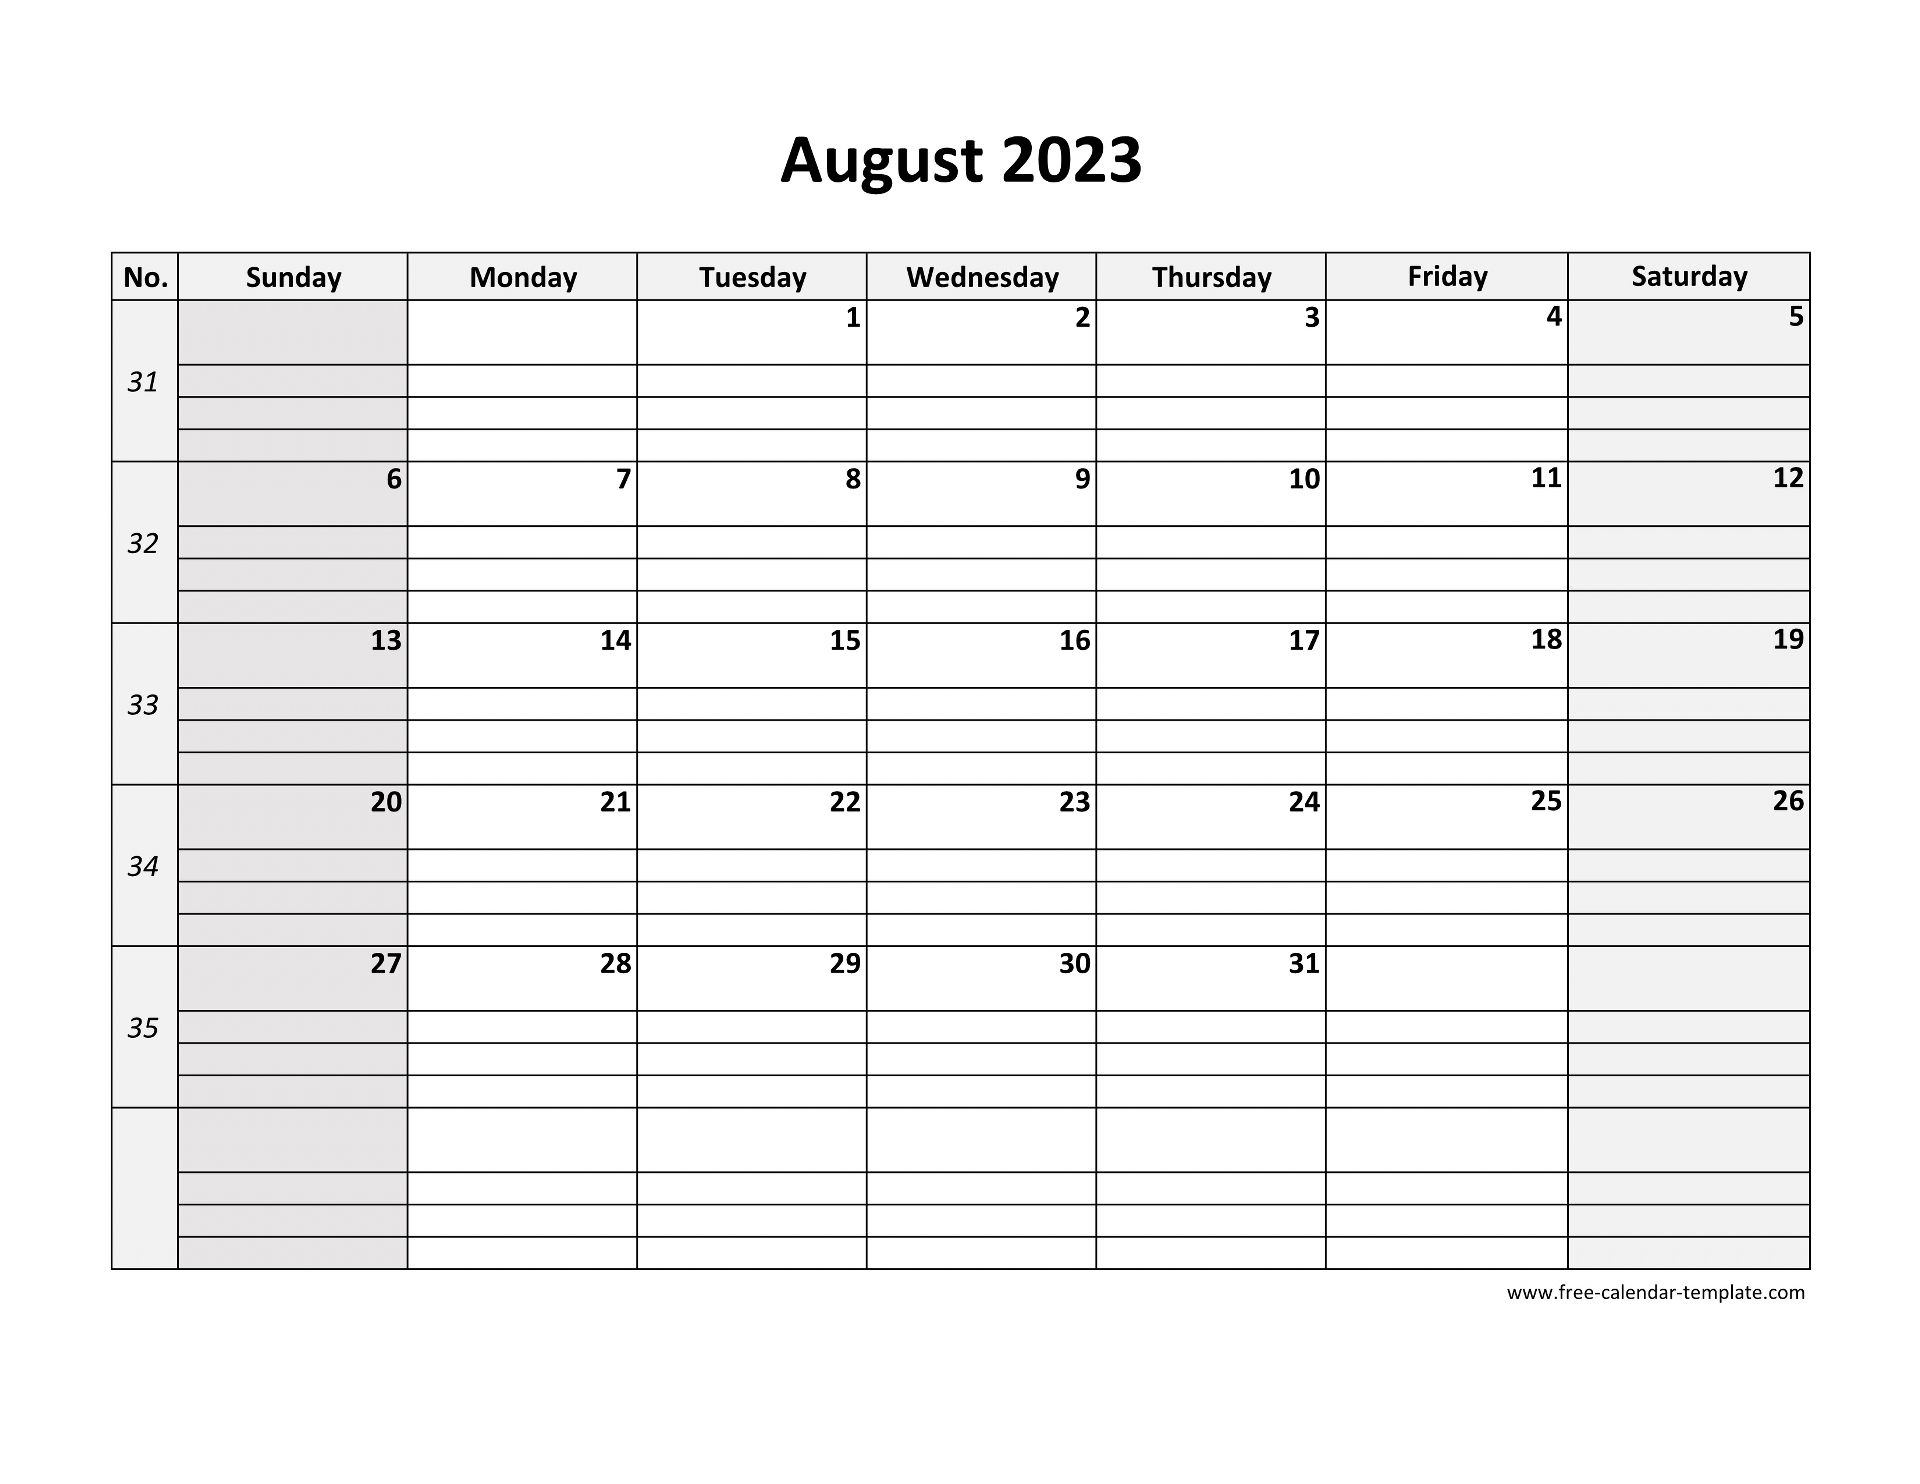 August 2023 Calendar Free Printable With Grid Lines Designed (Horizontal) |  Free-Calendar-Template.com